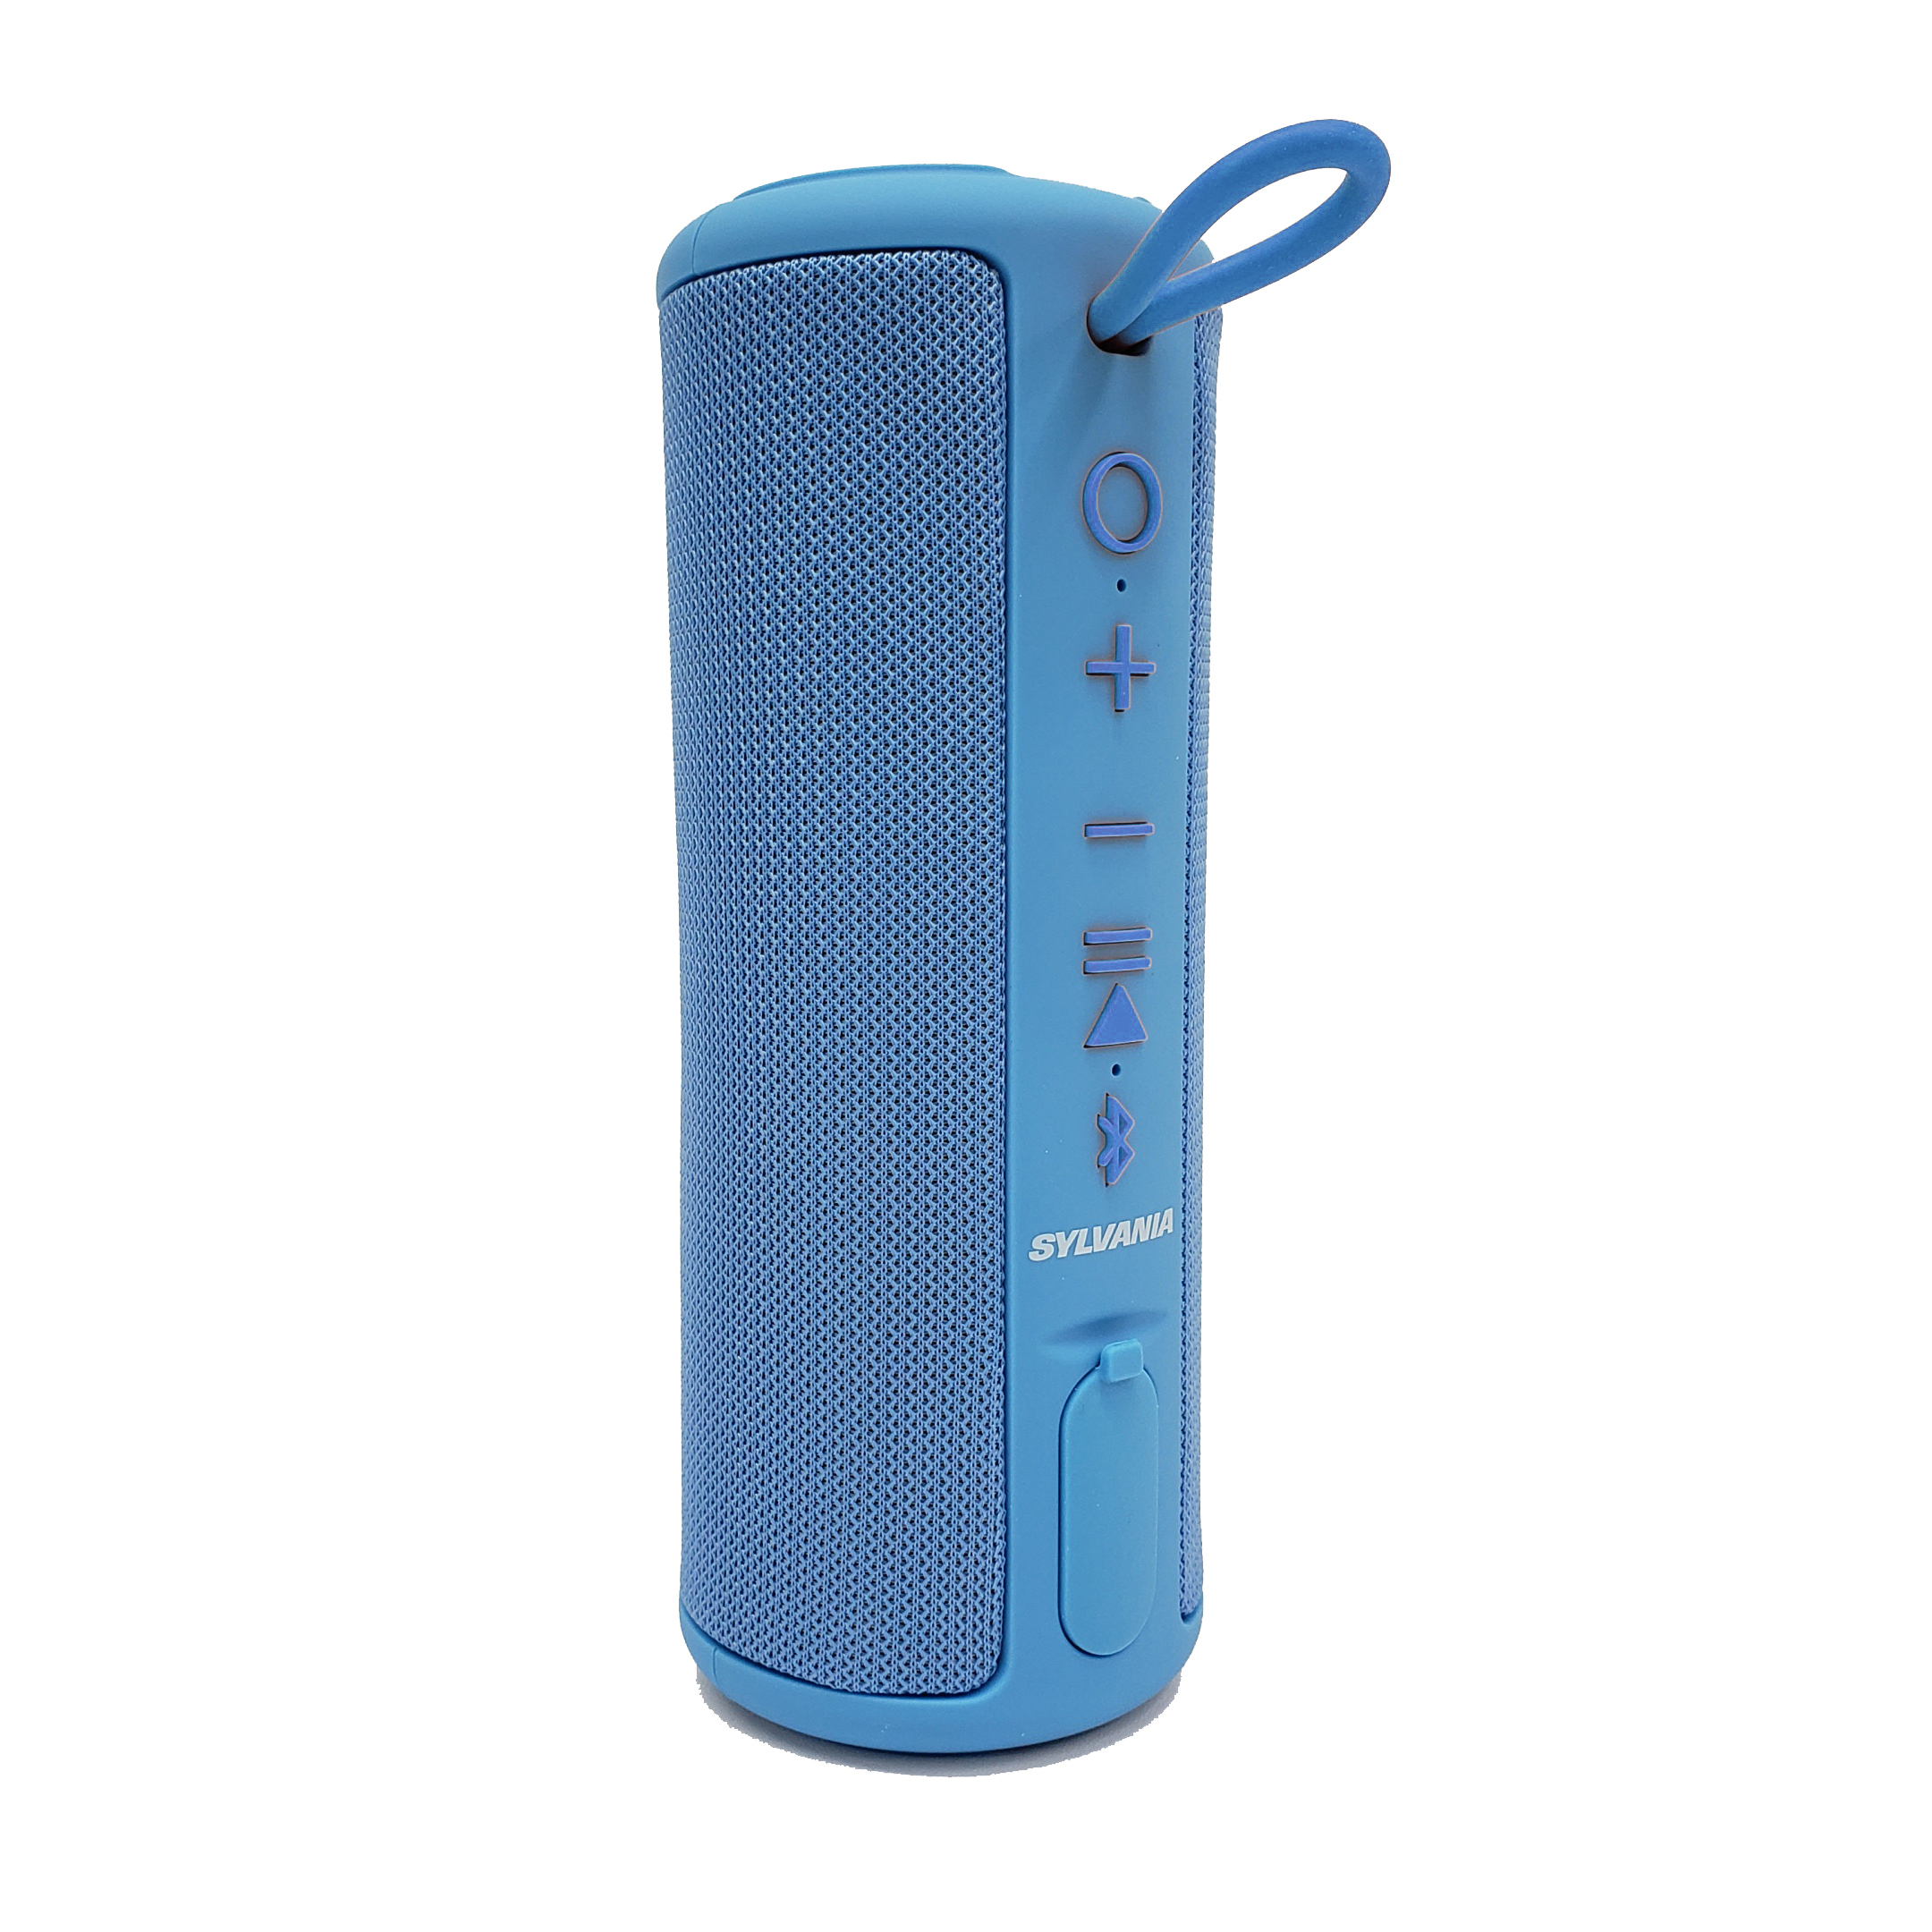 Sylvania 8" Premium Rugged  Water Resistant Bluetooth Speaker 360° Sound, Brilliant Blue, SP1043 - image 4 of 7